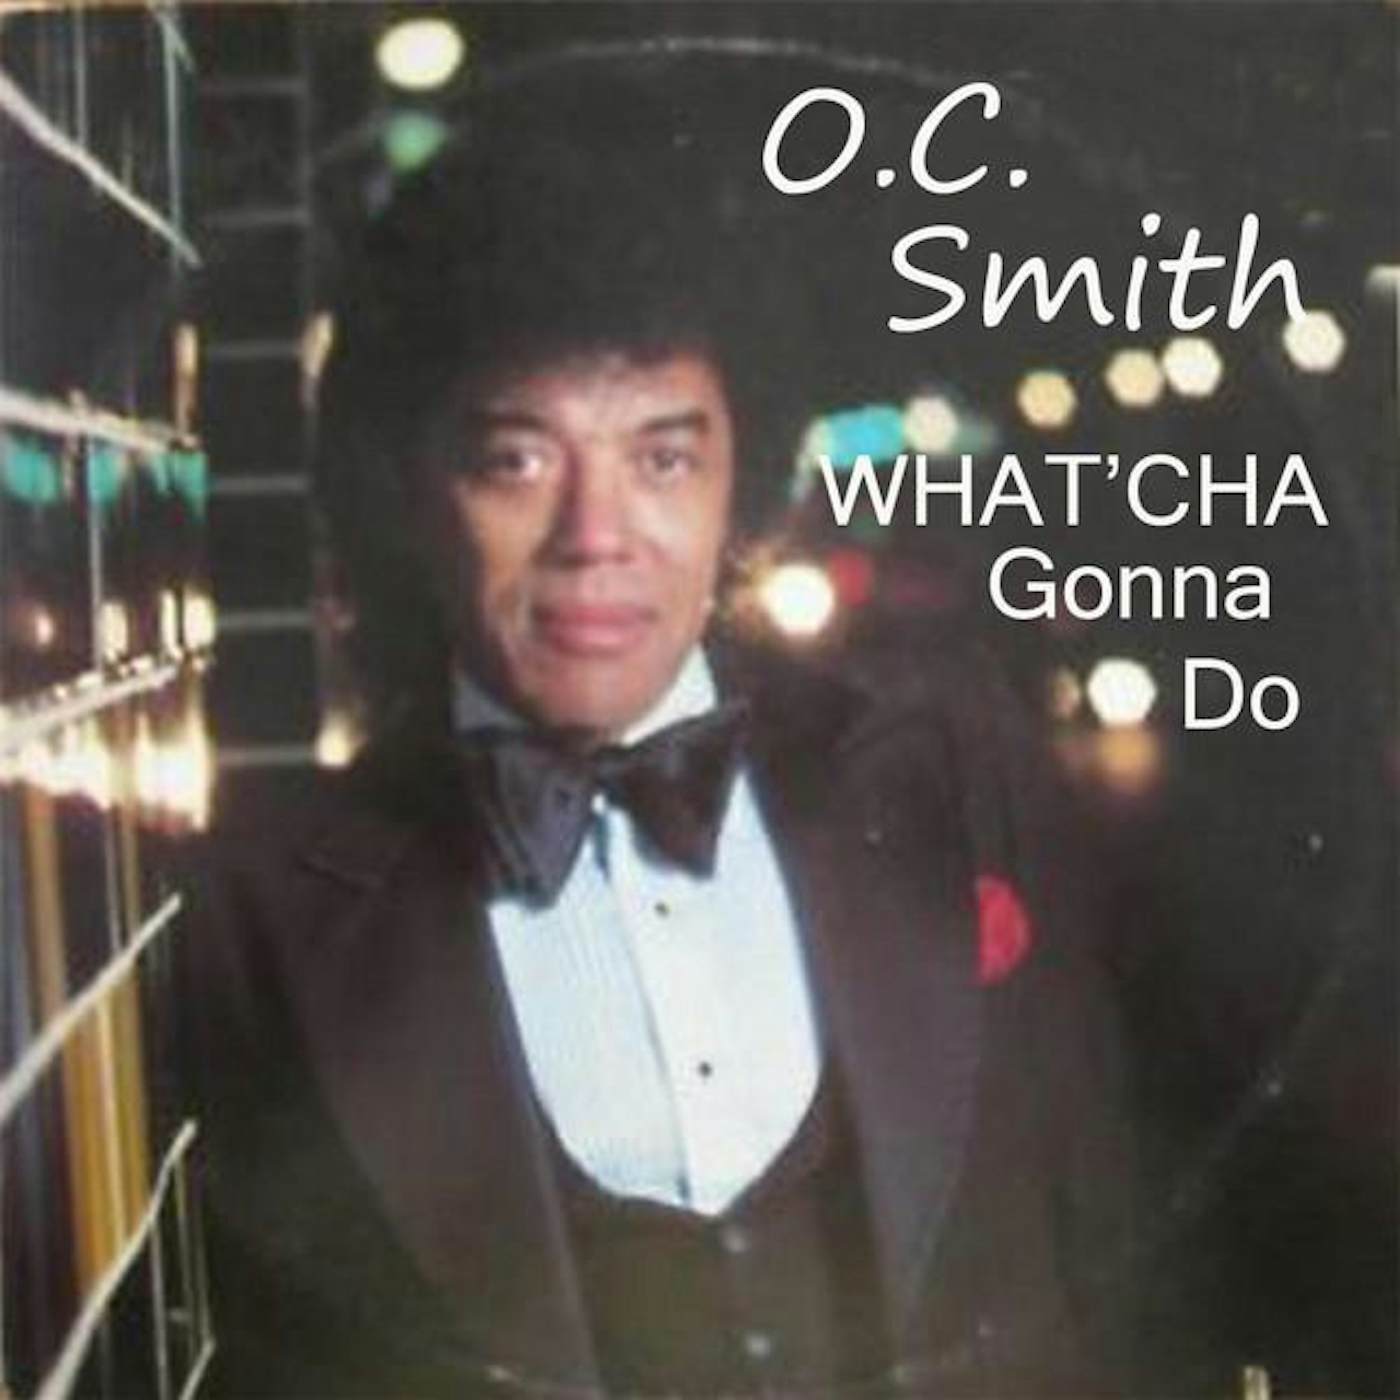 O.C. Smith